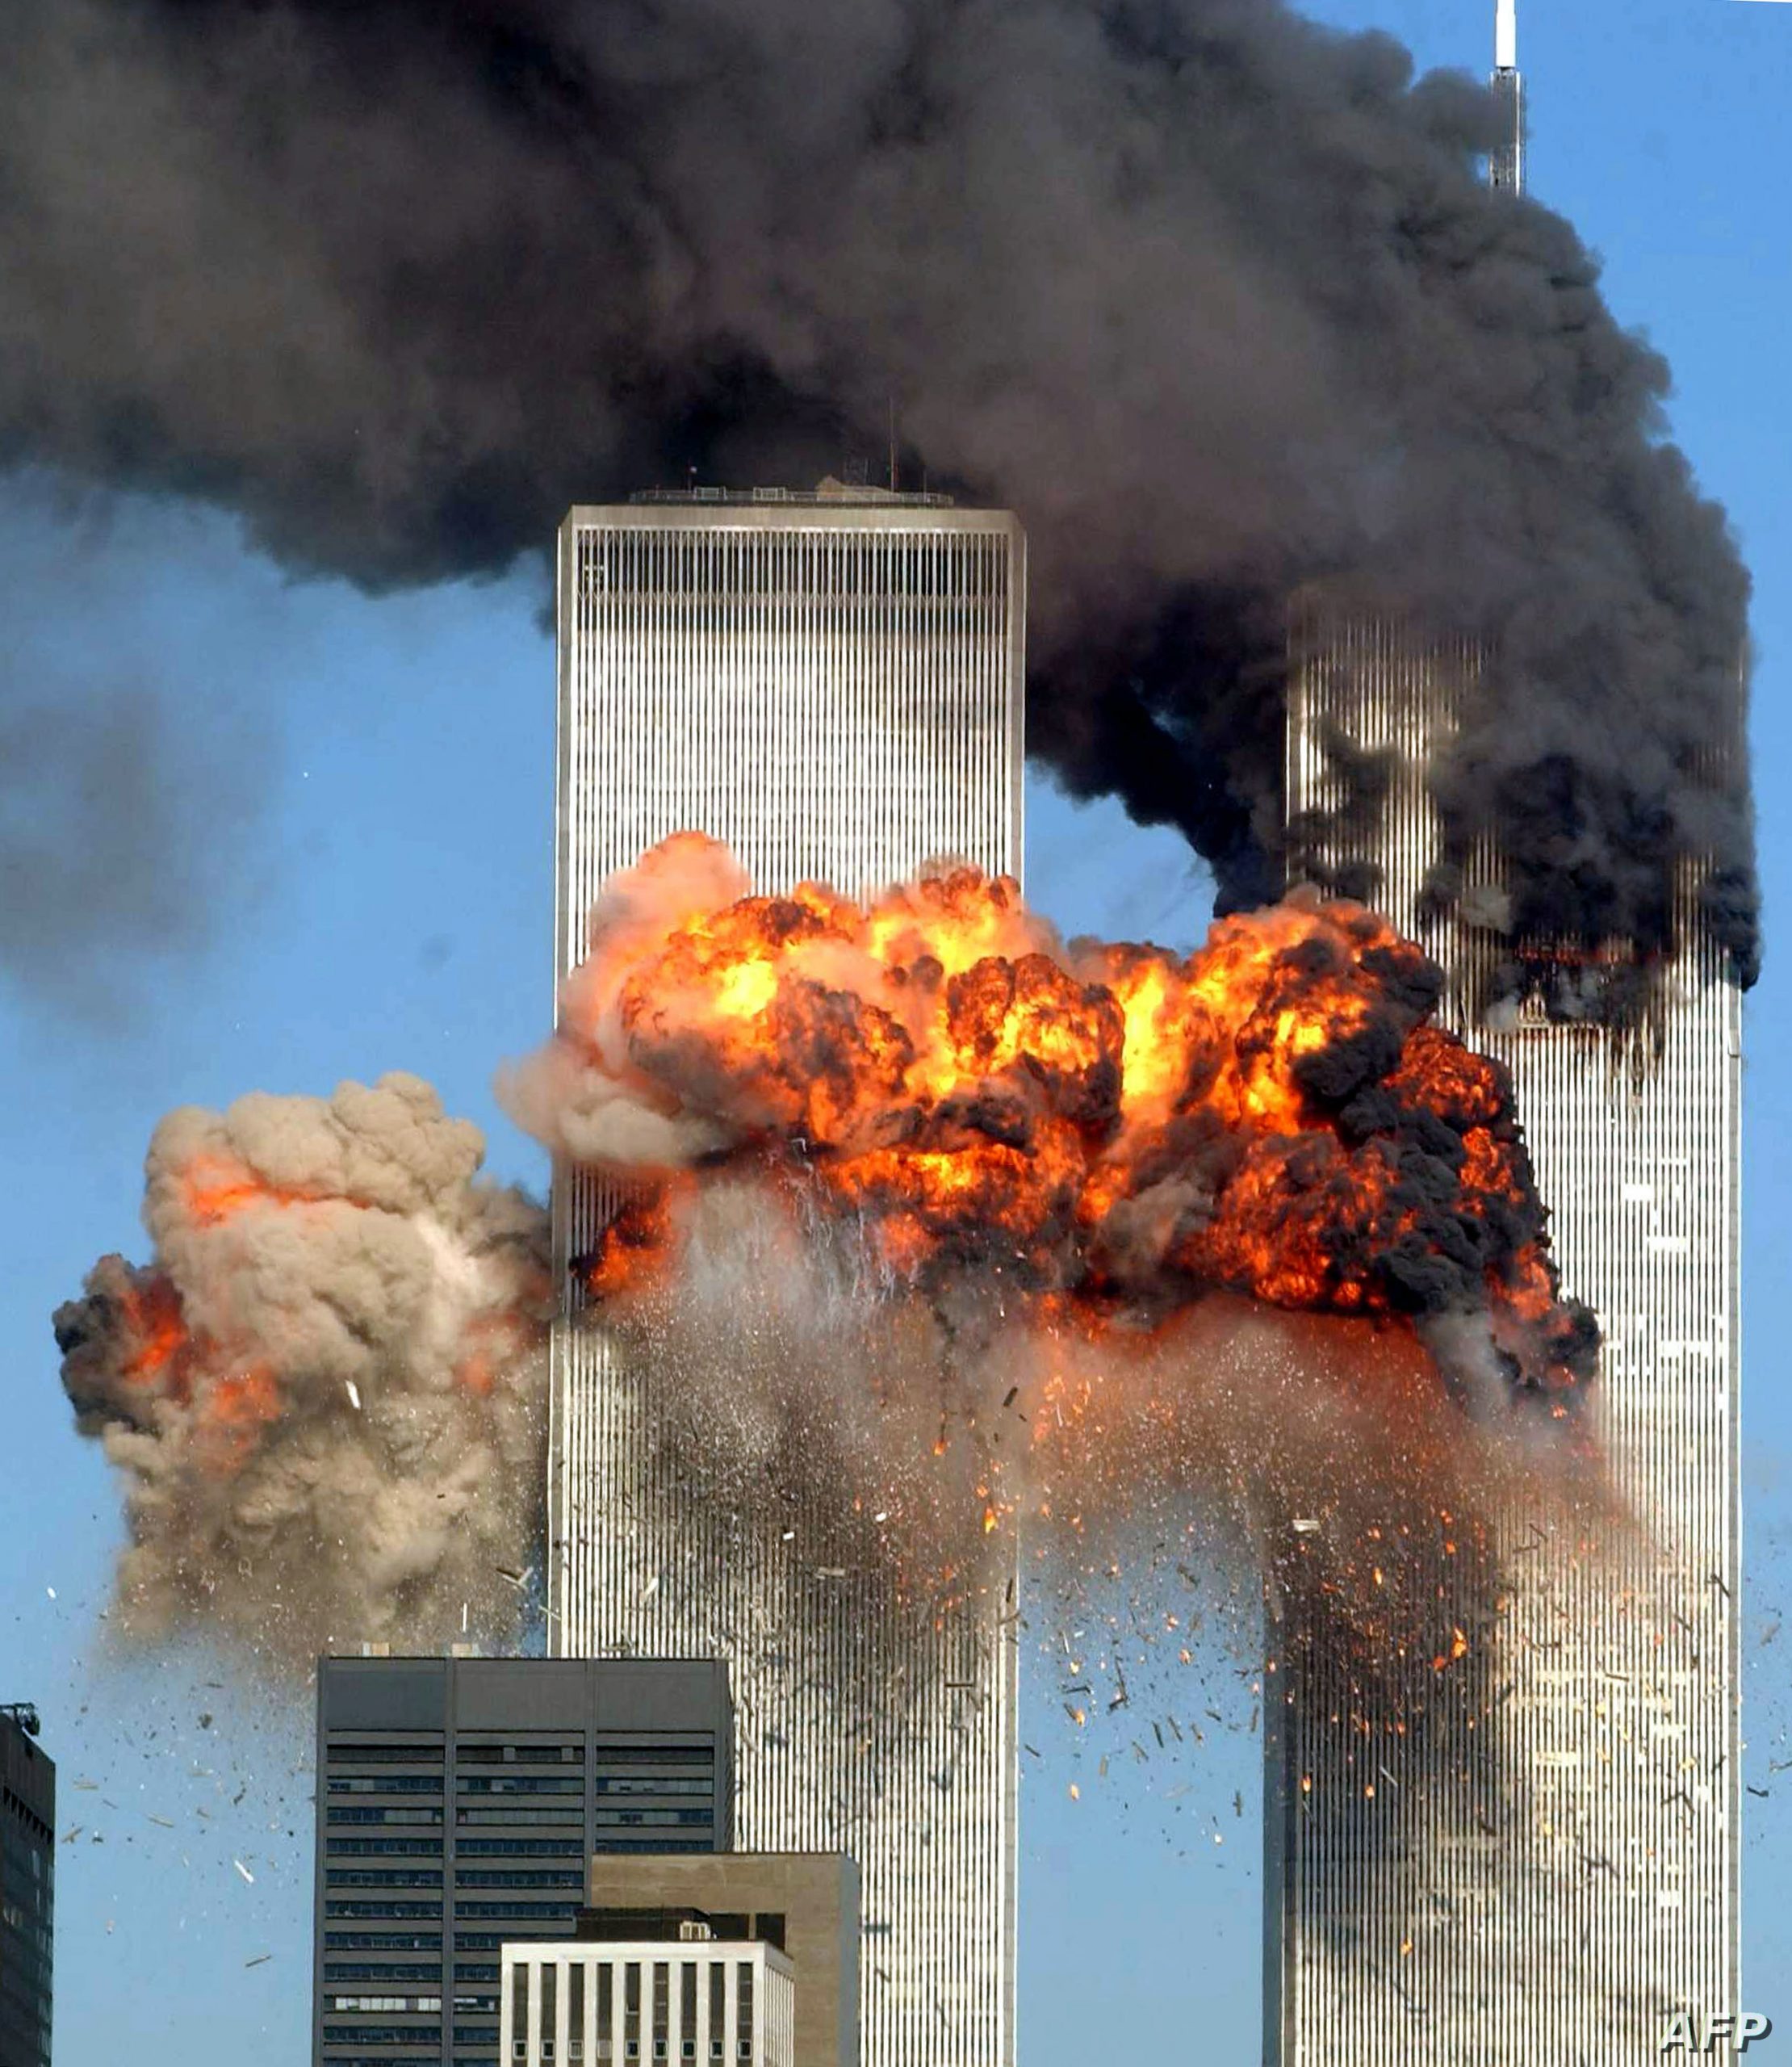   أحداث 11 سبتمبر .. رسالة عاجلة من أحمد موسى للشعب الأمريكي